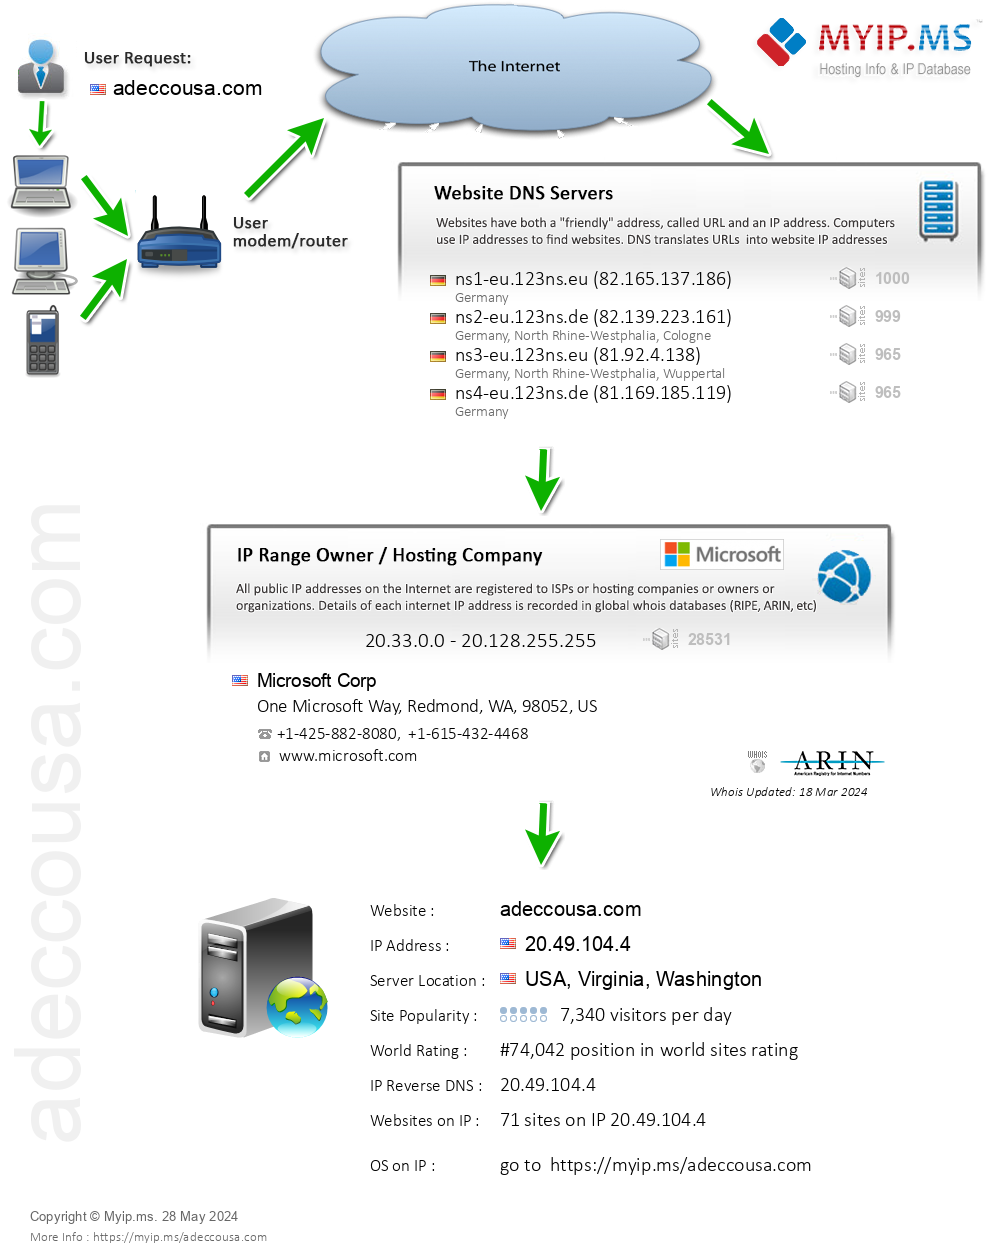 Adeccousa.com - Website Hosting Visual IP Diagram